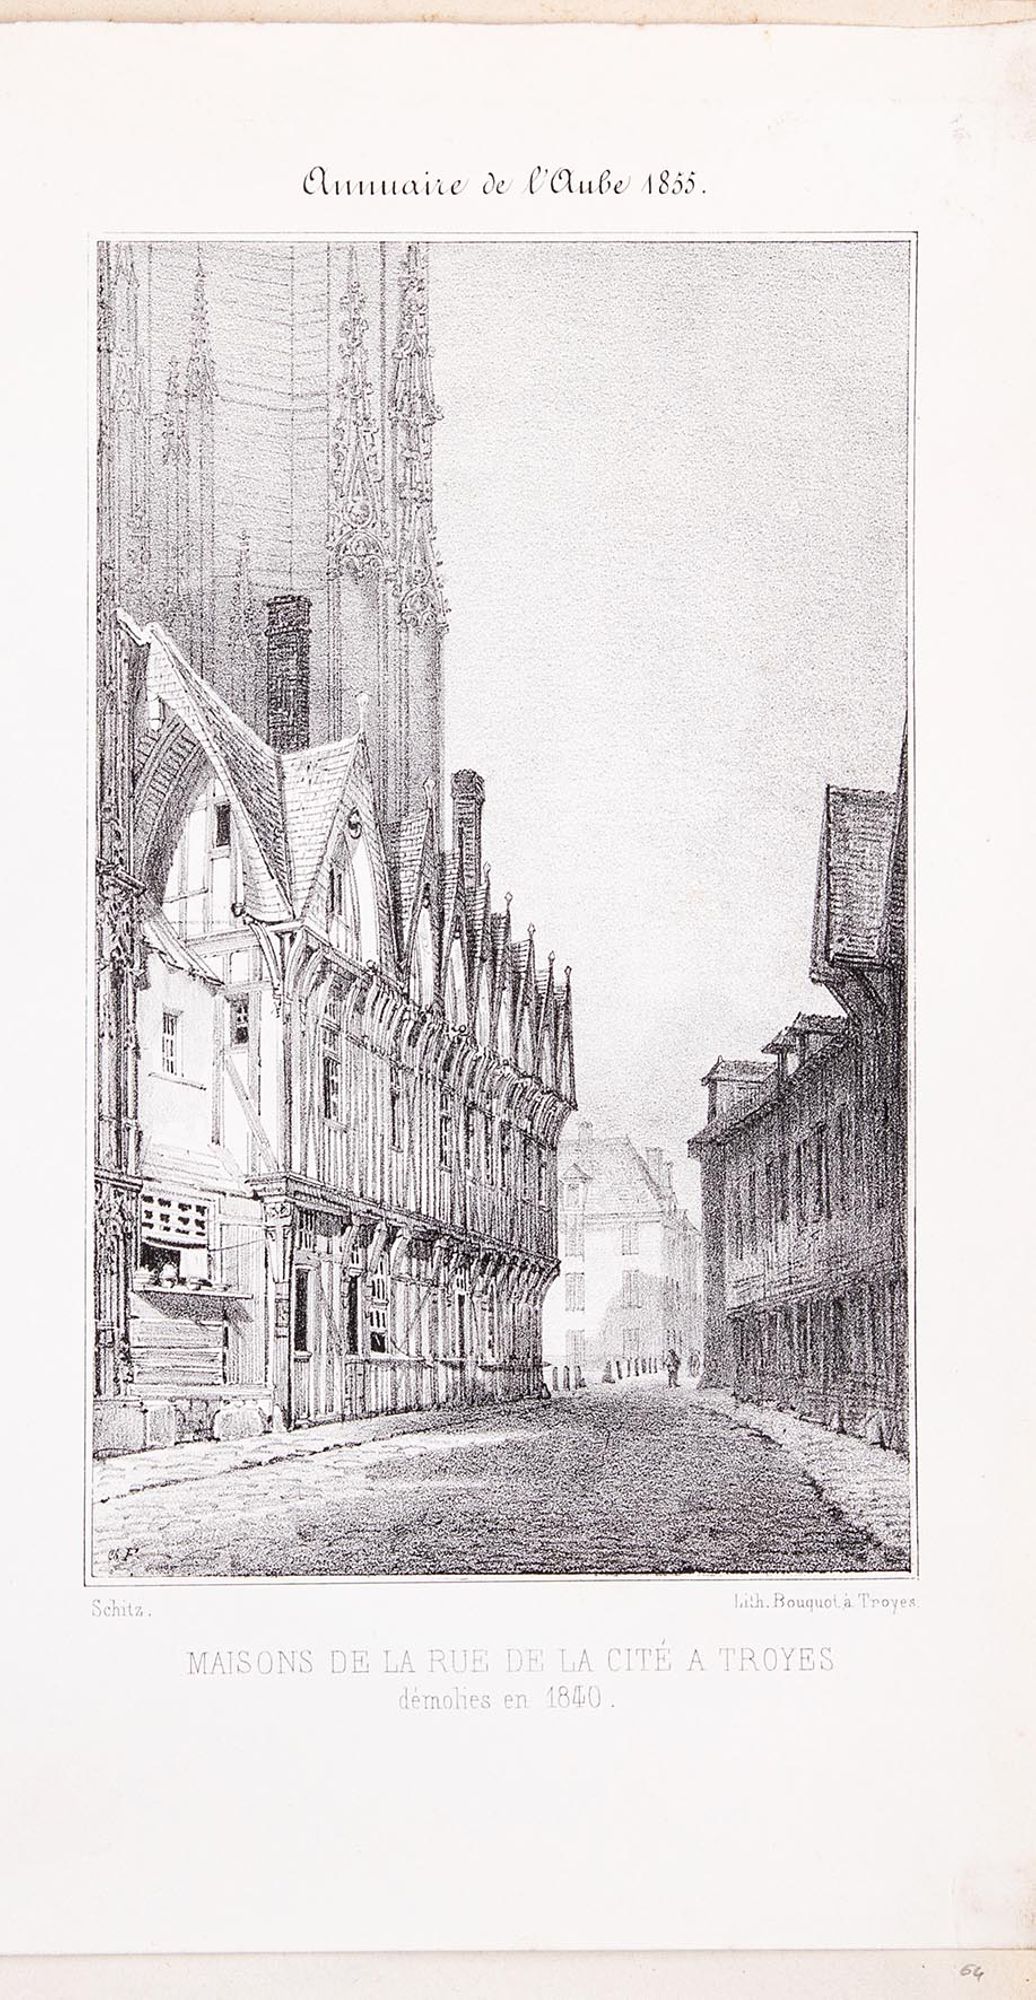 Lithographie. « Maisons de la rue de la Grande Tannerie à Troyes. Démolies en 1853 ». Extrait de l'Annuaire de l'Aube, Troyes, 1855.